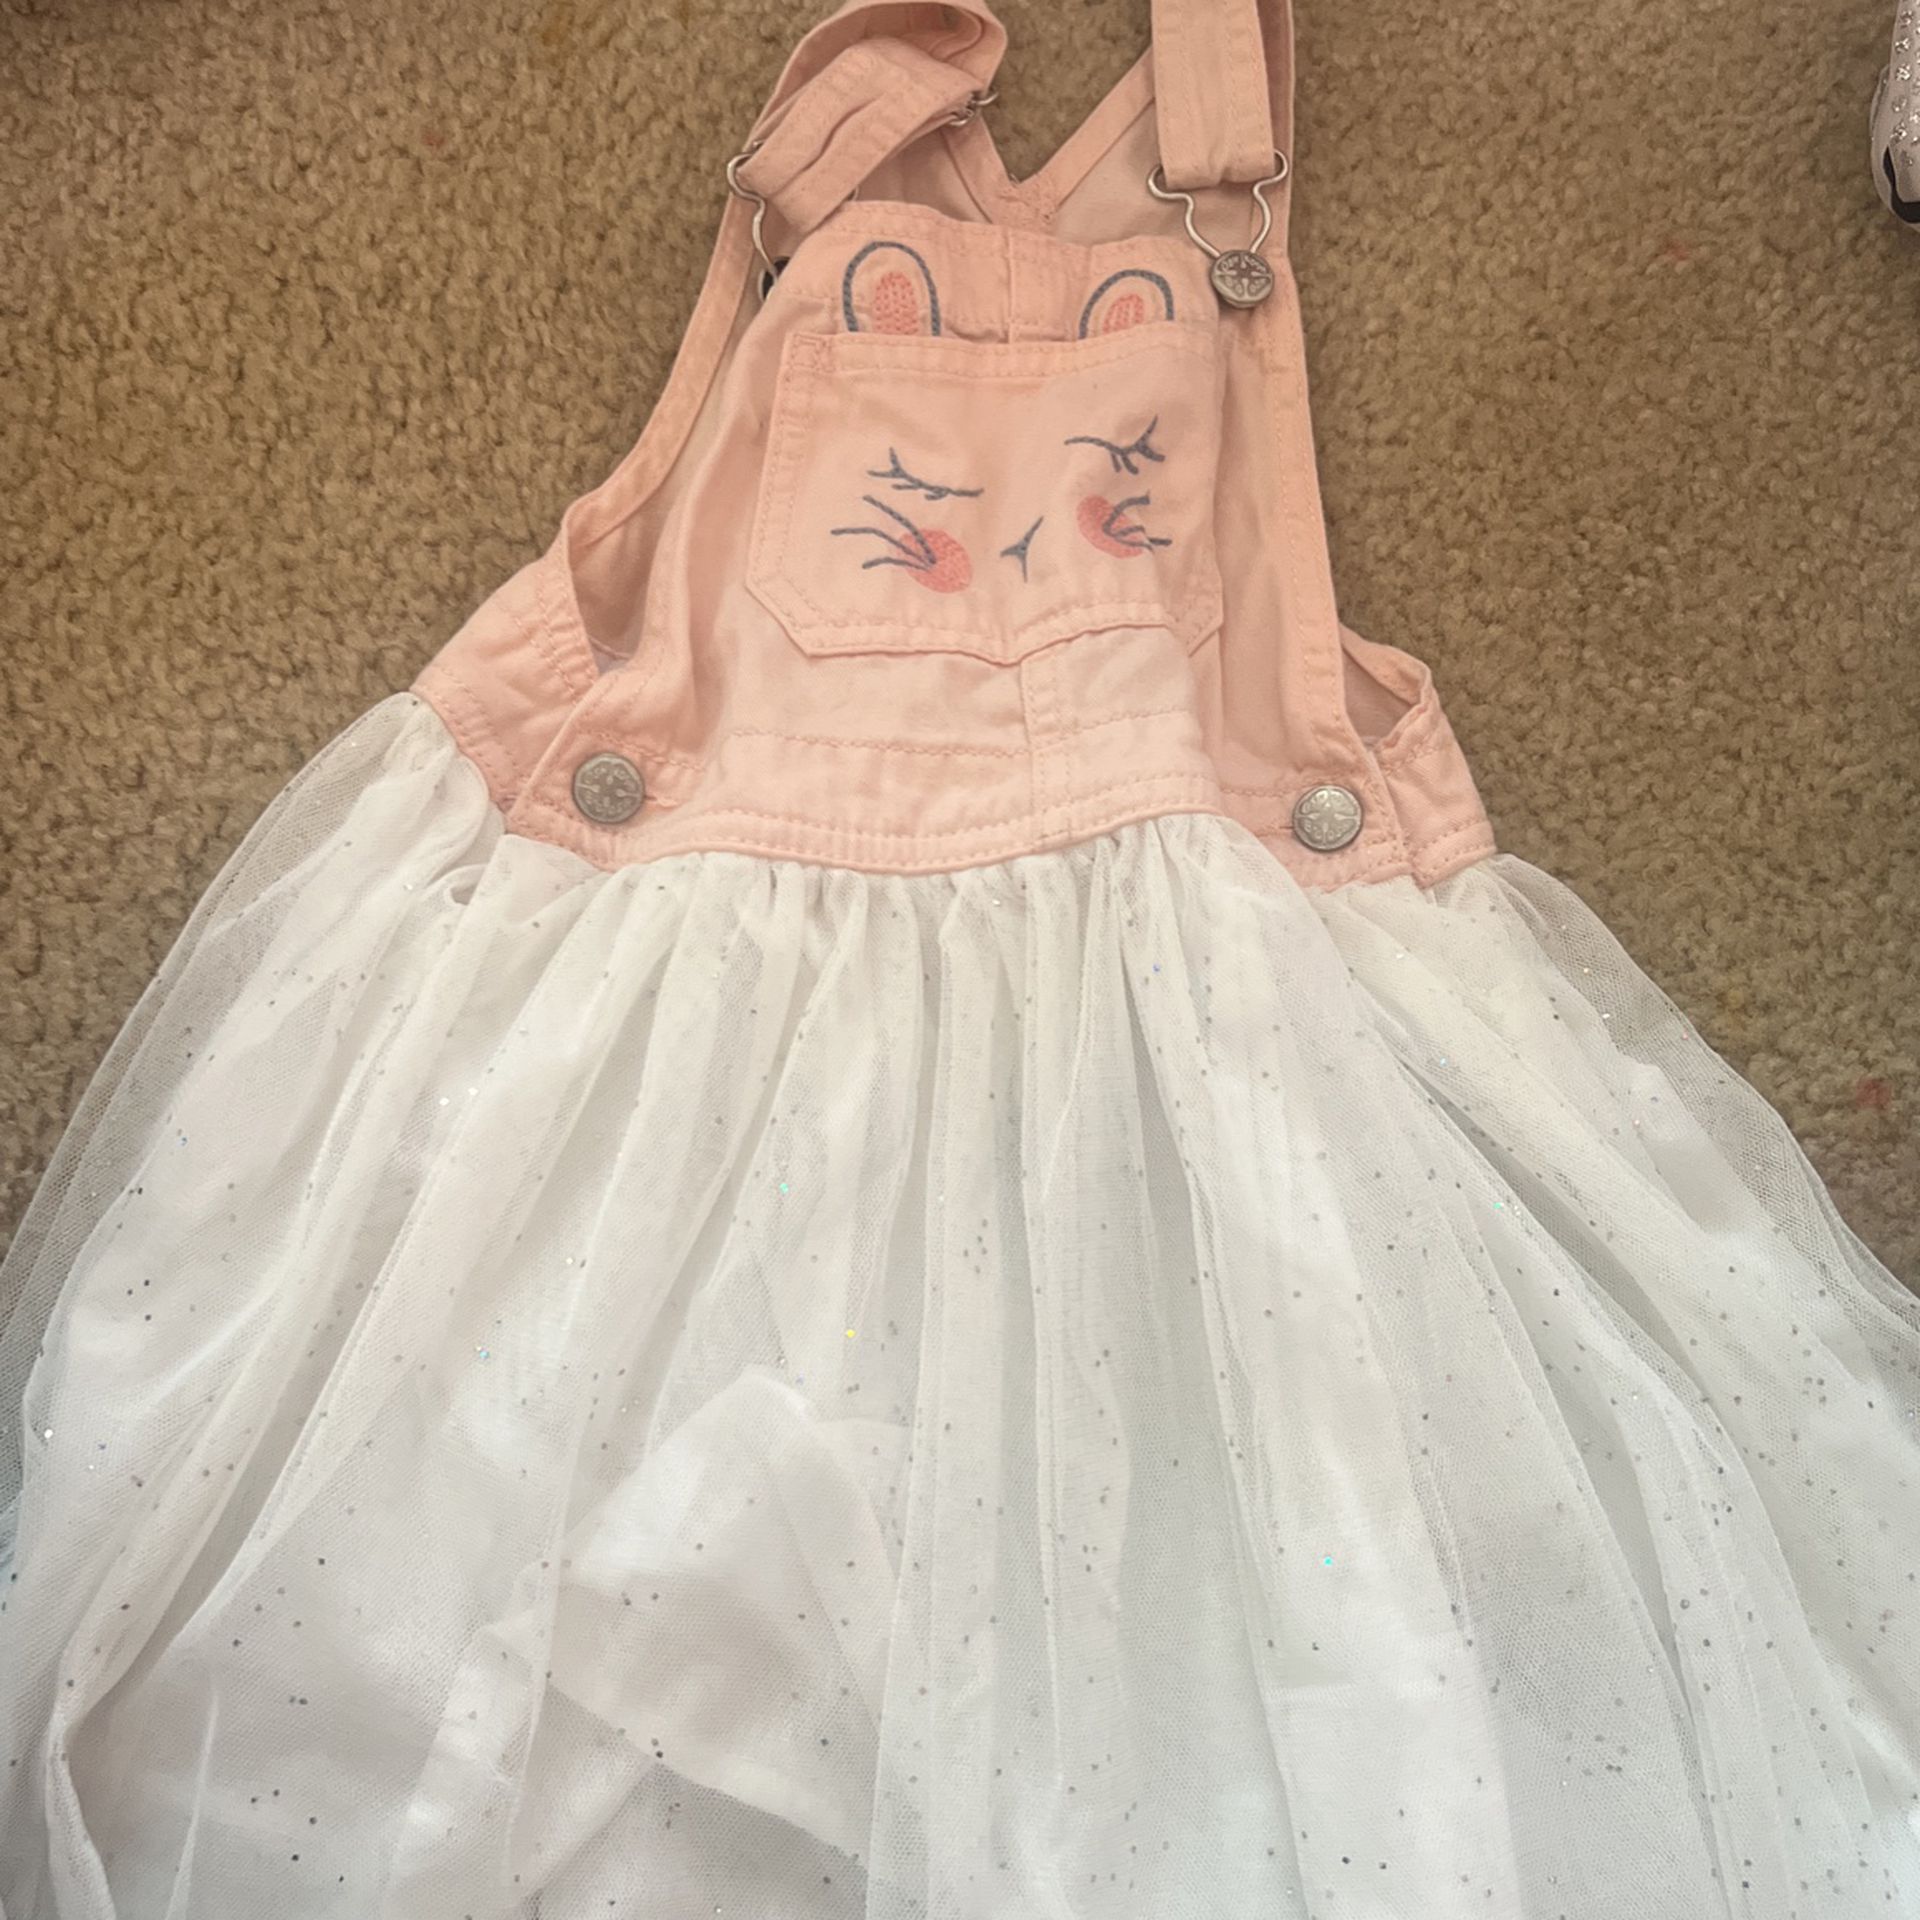 Bunny Overall Dress